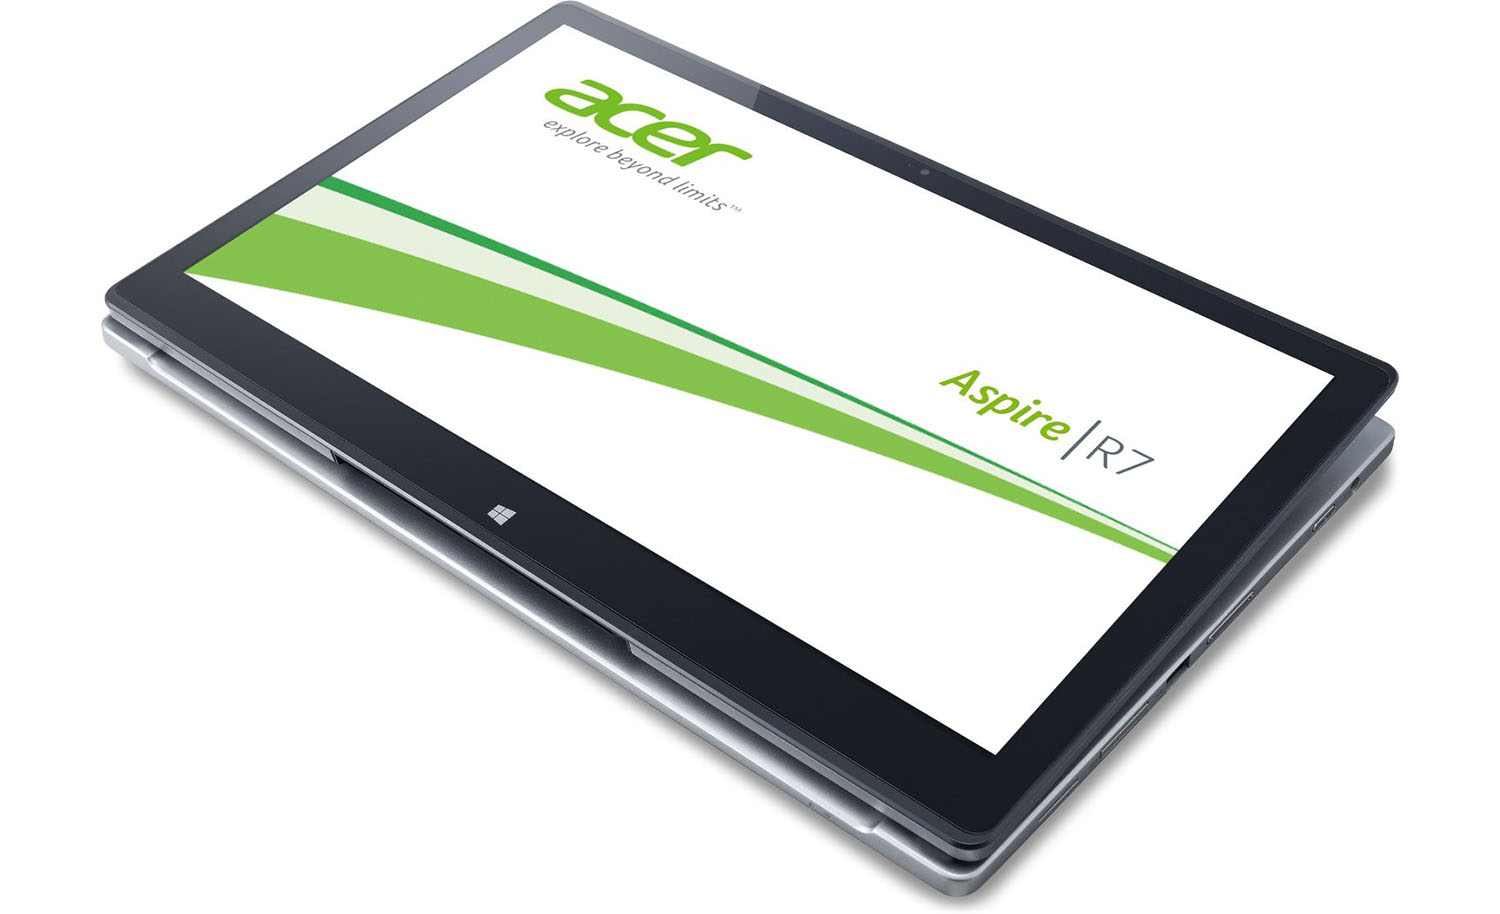 Acer Aspire R7-571 Intel Core i5 3rd Gen 6GB RAM 24GB SSD + 500GB HDD  Windows 10 Home